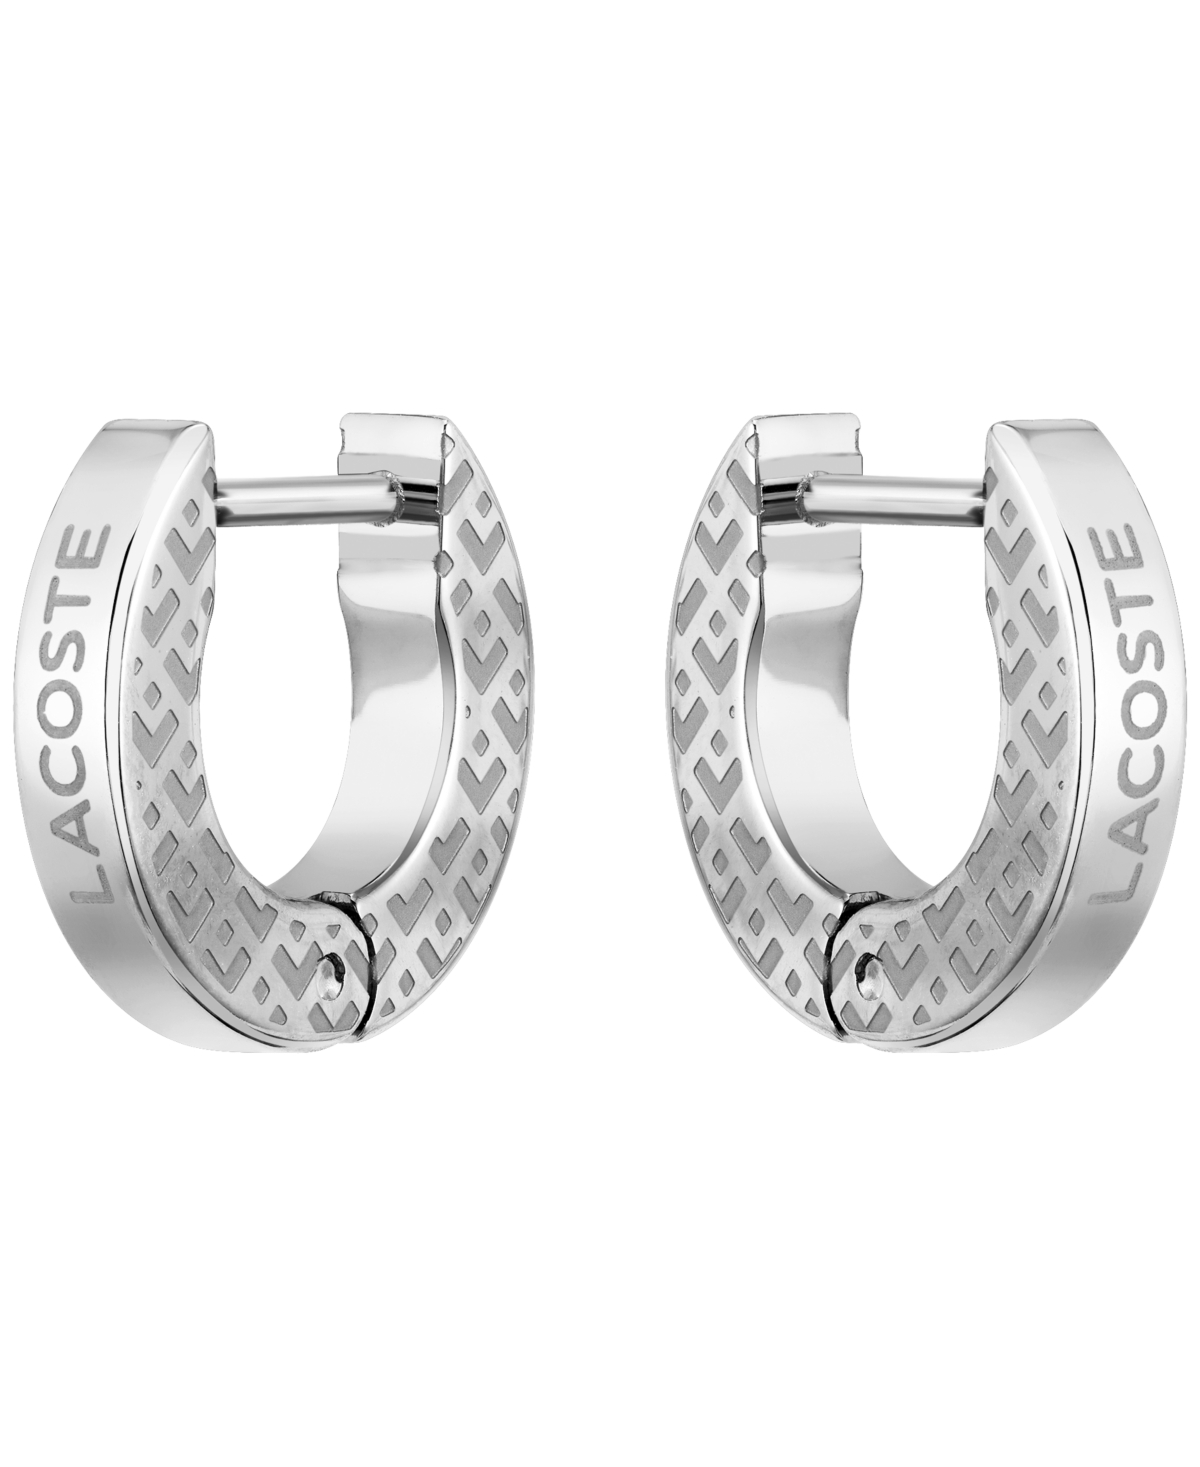 Lacoste Men's Stainless Steel Hoop Earrings In Silver